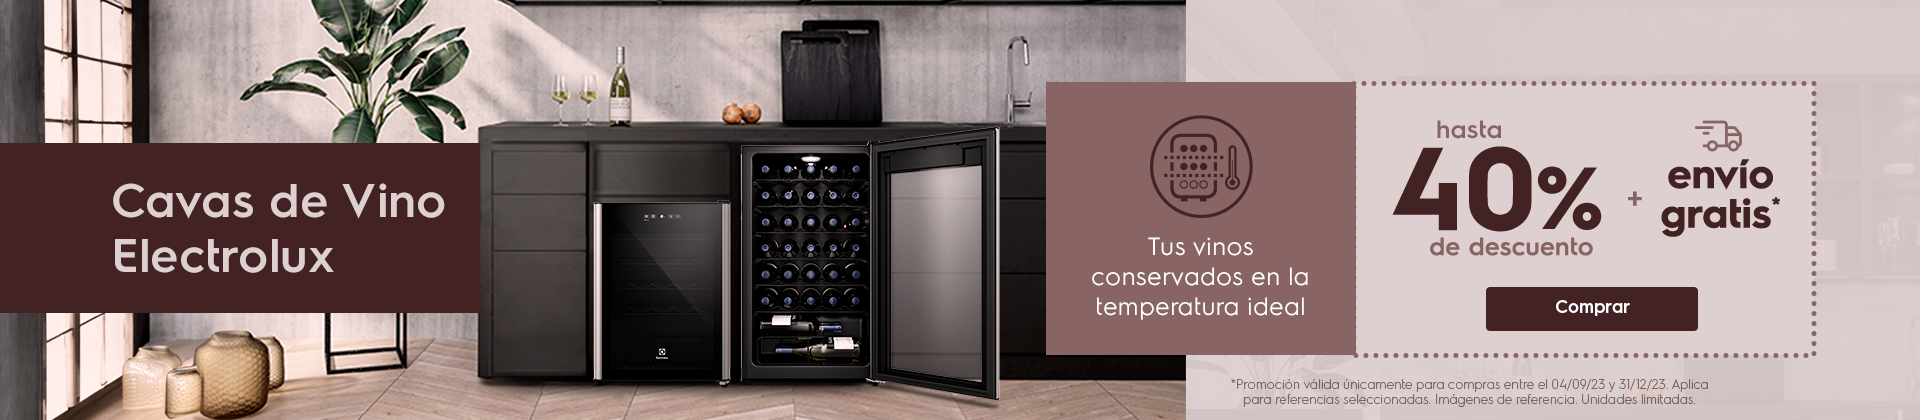 Tus vinos conservalos en la temperatura ideal hasta 40% dscto